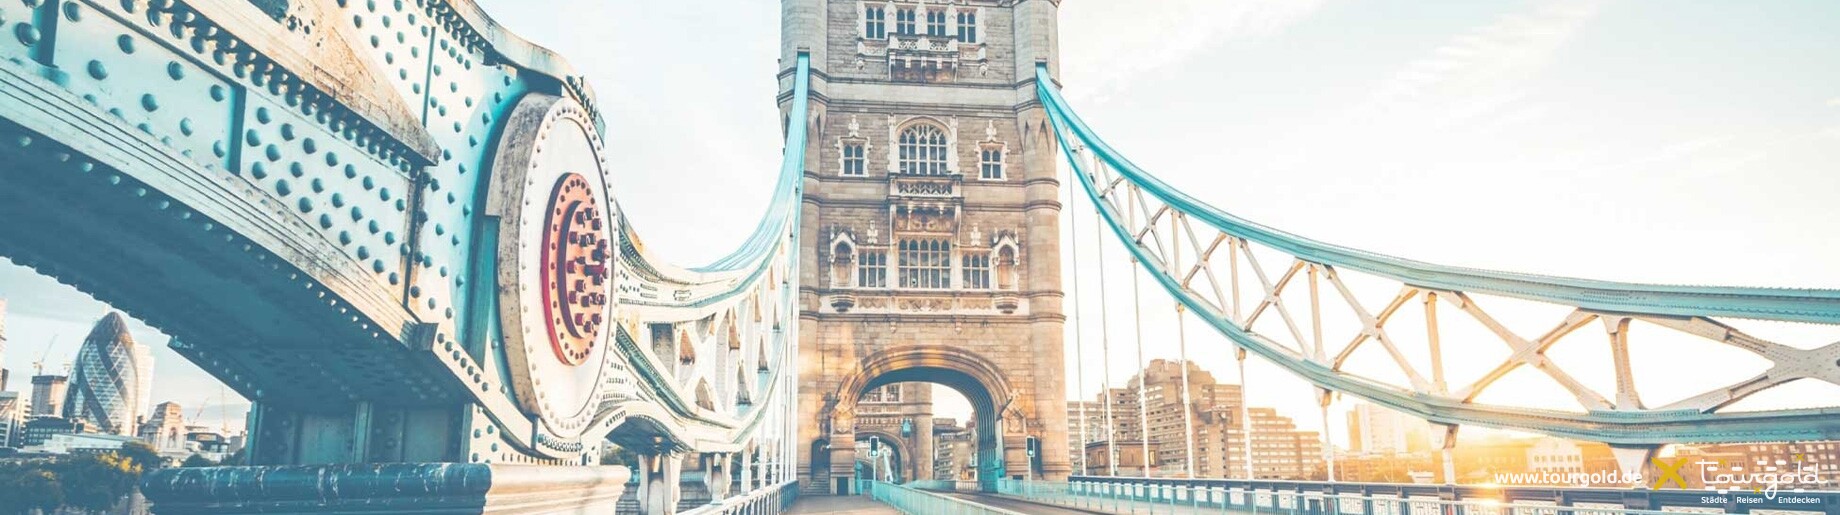 Tourgold Städtereisen Busreisen London Tower Bridge Header